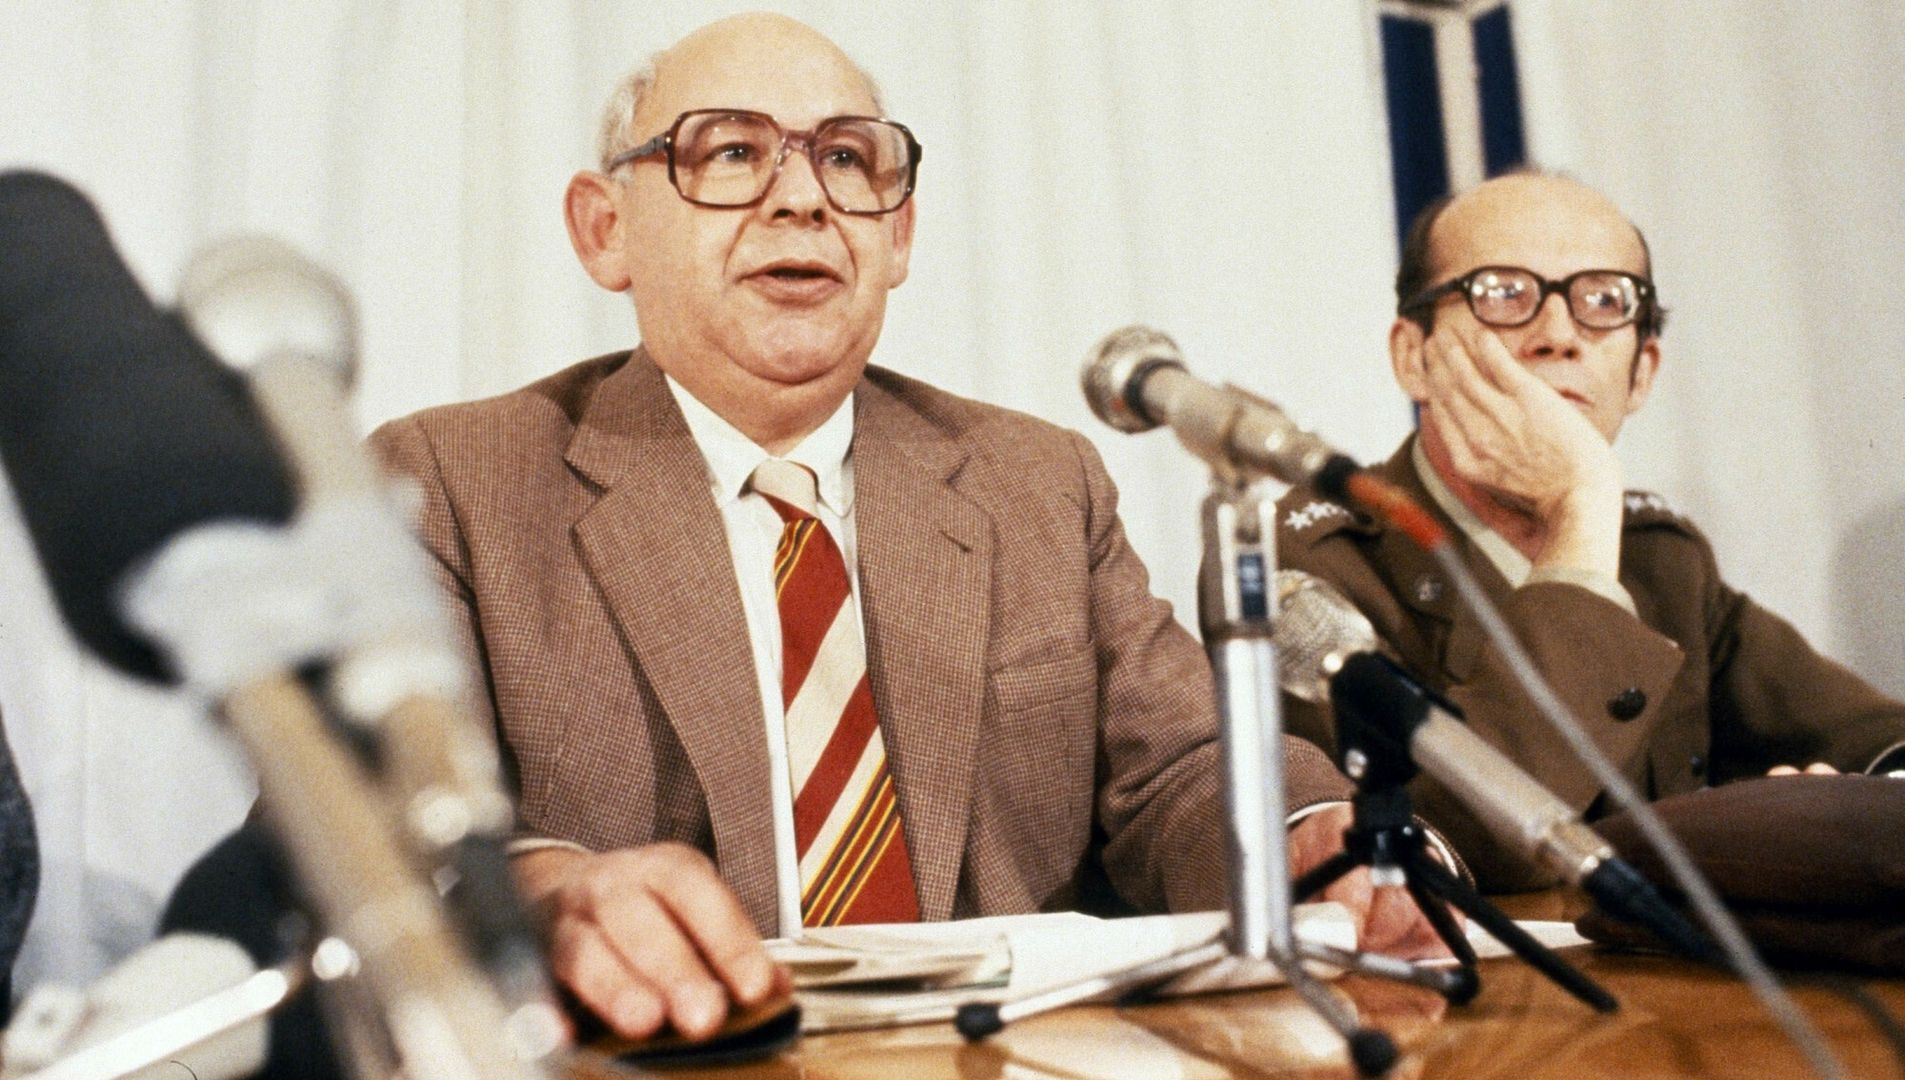 Rzecznik rządu Jerzy Urban w trakcie konferencji prasowej podczas stanu wojennego. Warszawa, 1982.
WOJTEK LASKI